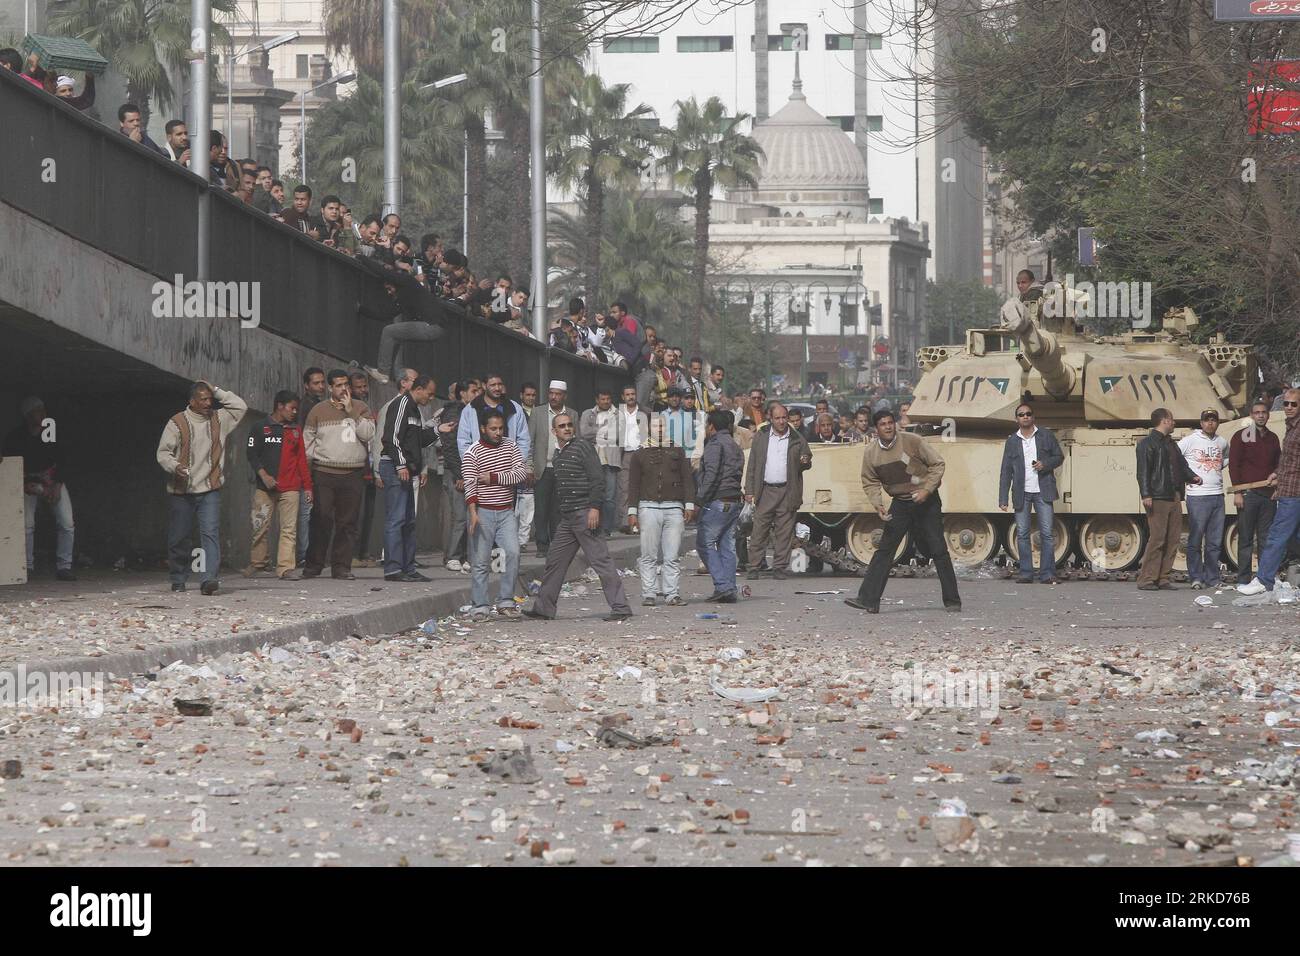 Bildnummer: 54879081 Datum: 03.02.2011 Copyright: imago/Xinhua CAIRO, 3 febbraio 2011 (Xinhua) -- i manifestanti egiziani sono visti dentro e intorno a piazza Tahrir, come sostenitori e oppositori del presidente xHosnyxMubarakx si scontrano in alcune parti della piazza, il Cairo, capitale dell'Egitto, 3 febbraio 2011. L'esercito egiziano sembrava cercare di stabilire una linea per separare i manifestanti pro-governo e dell'opposizione nel centro del Cairo nel tentativo di frenare la violenza, hanno detto testimoni oculari. Secondo gli attivisti e i testimoni dell'opposizione, altri dal campo anti-governativo stavano tentando di entrare nella piazza, mentre altri erano st Foto Stock